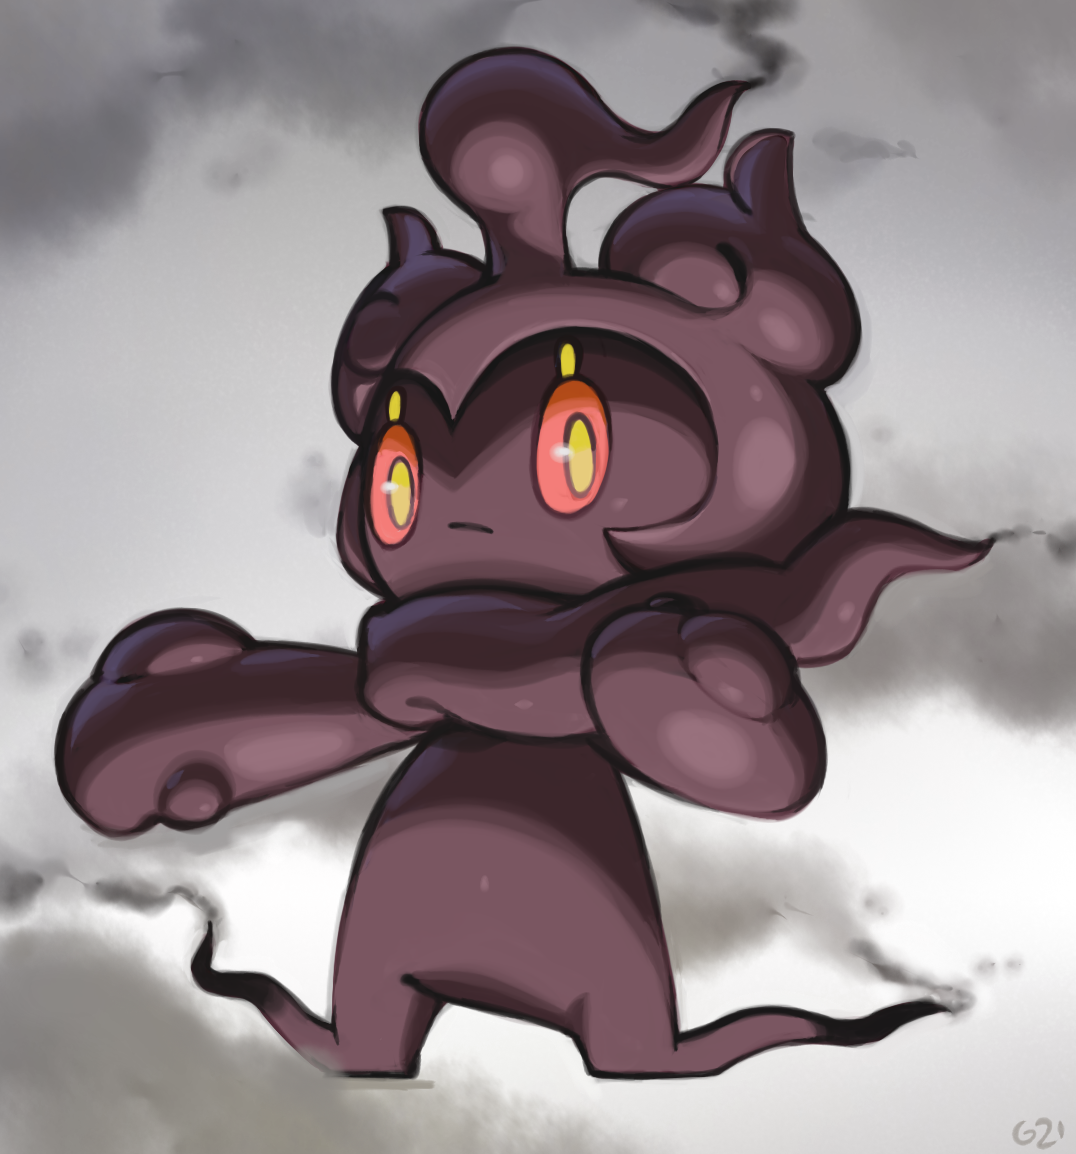 mimikyu (pokemon) drawn by pinkgermy